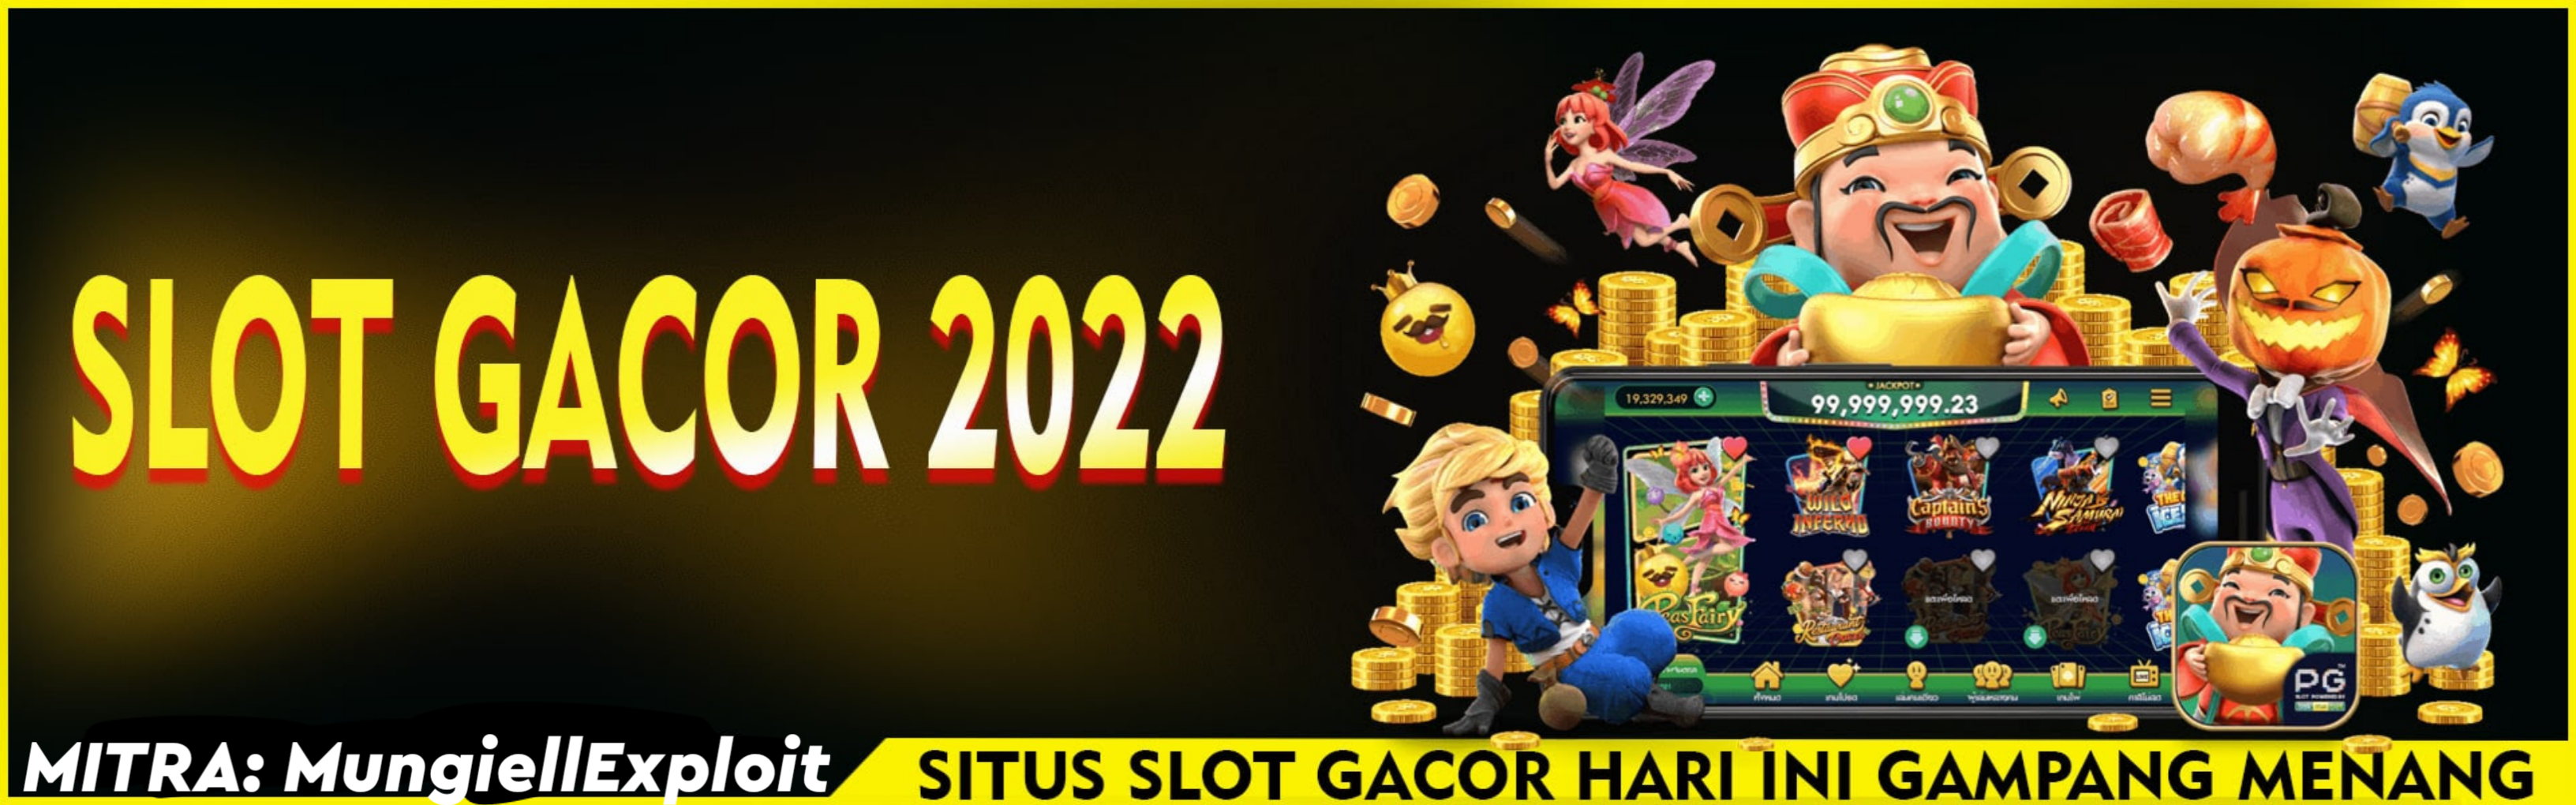 SLOT88 - Slot Gacor 2022 Situs Judi Slot Online Terpercaya